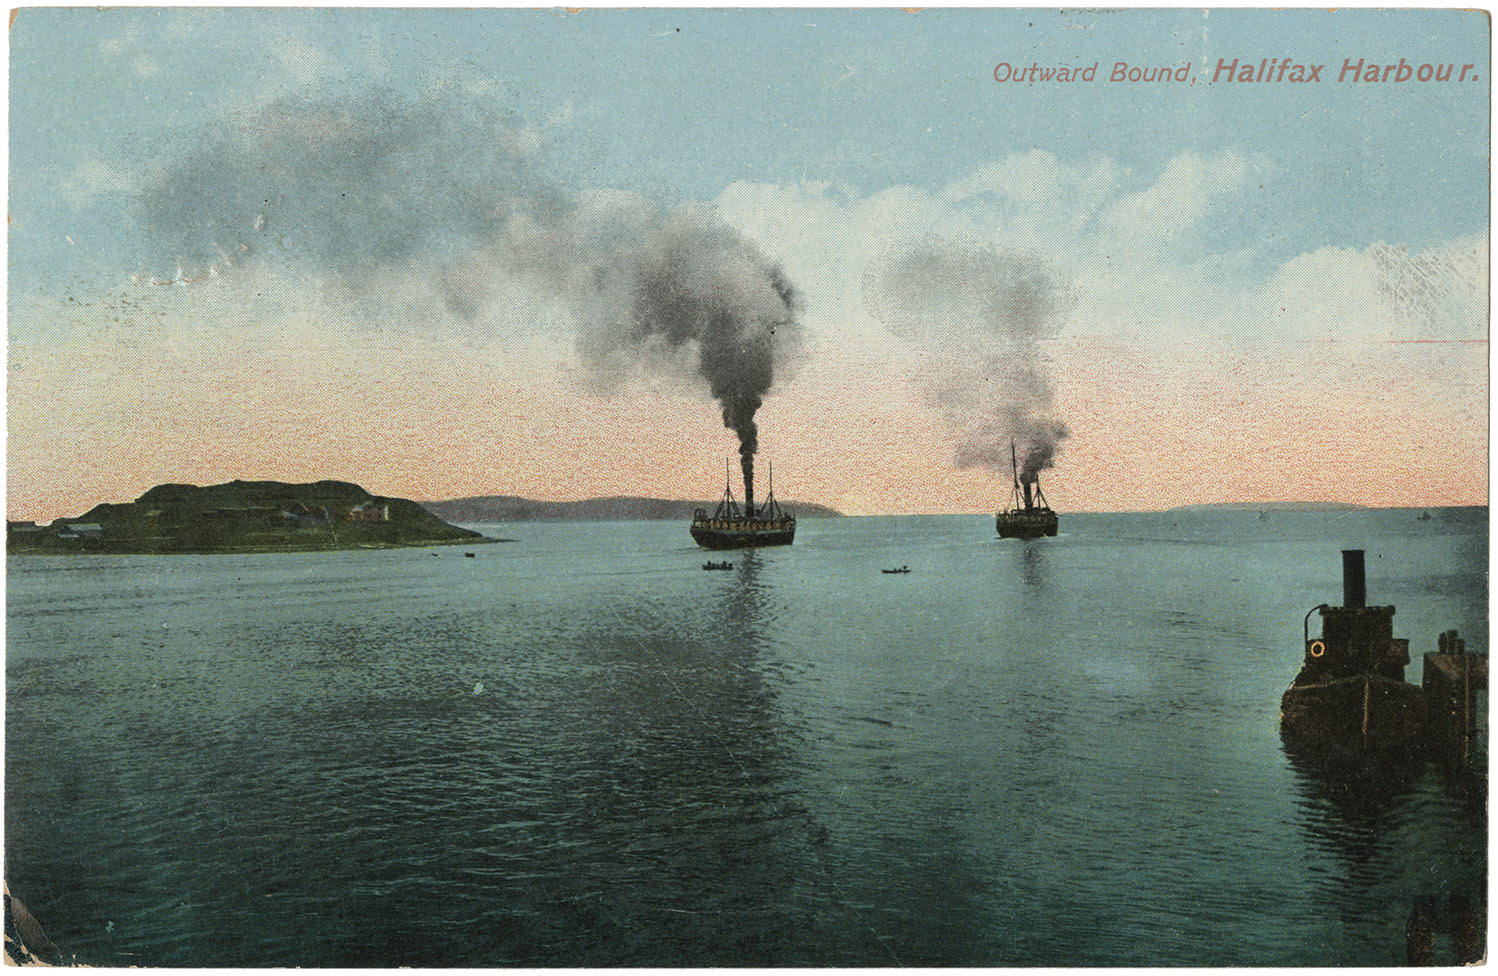 communityalbums - Outward Bound, Halifax Harbour